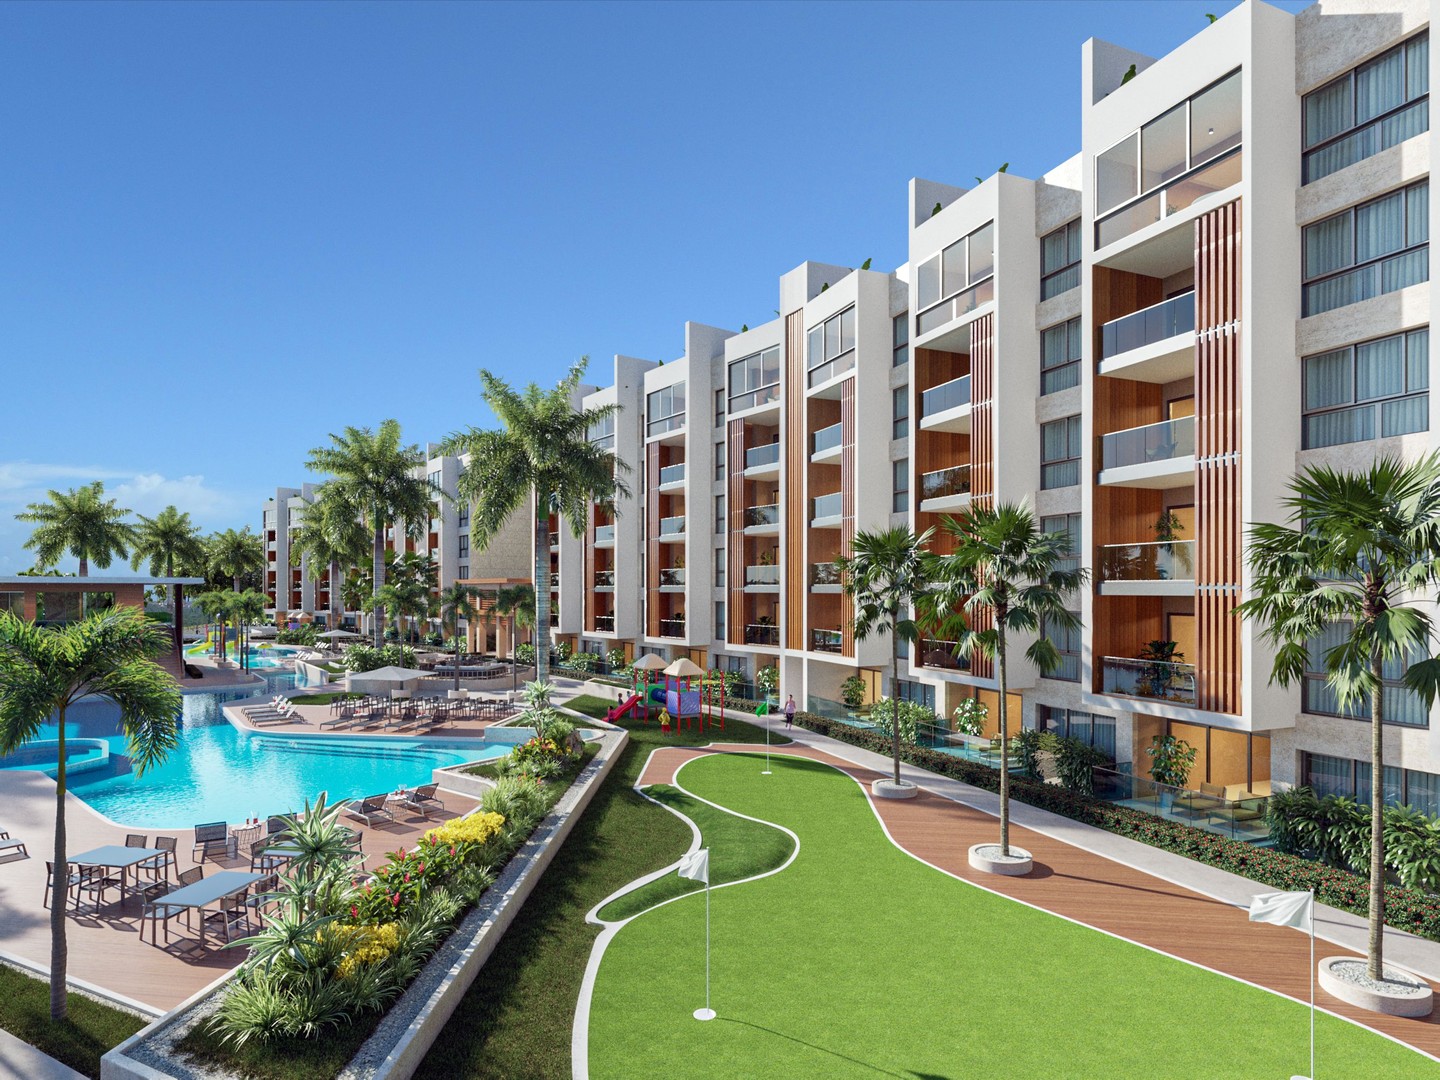 apartamentos - Apartamento Exclusivo Disponible en Cap Cana: Vive el Paraíso Caribeño 5